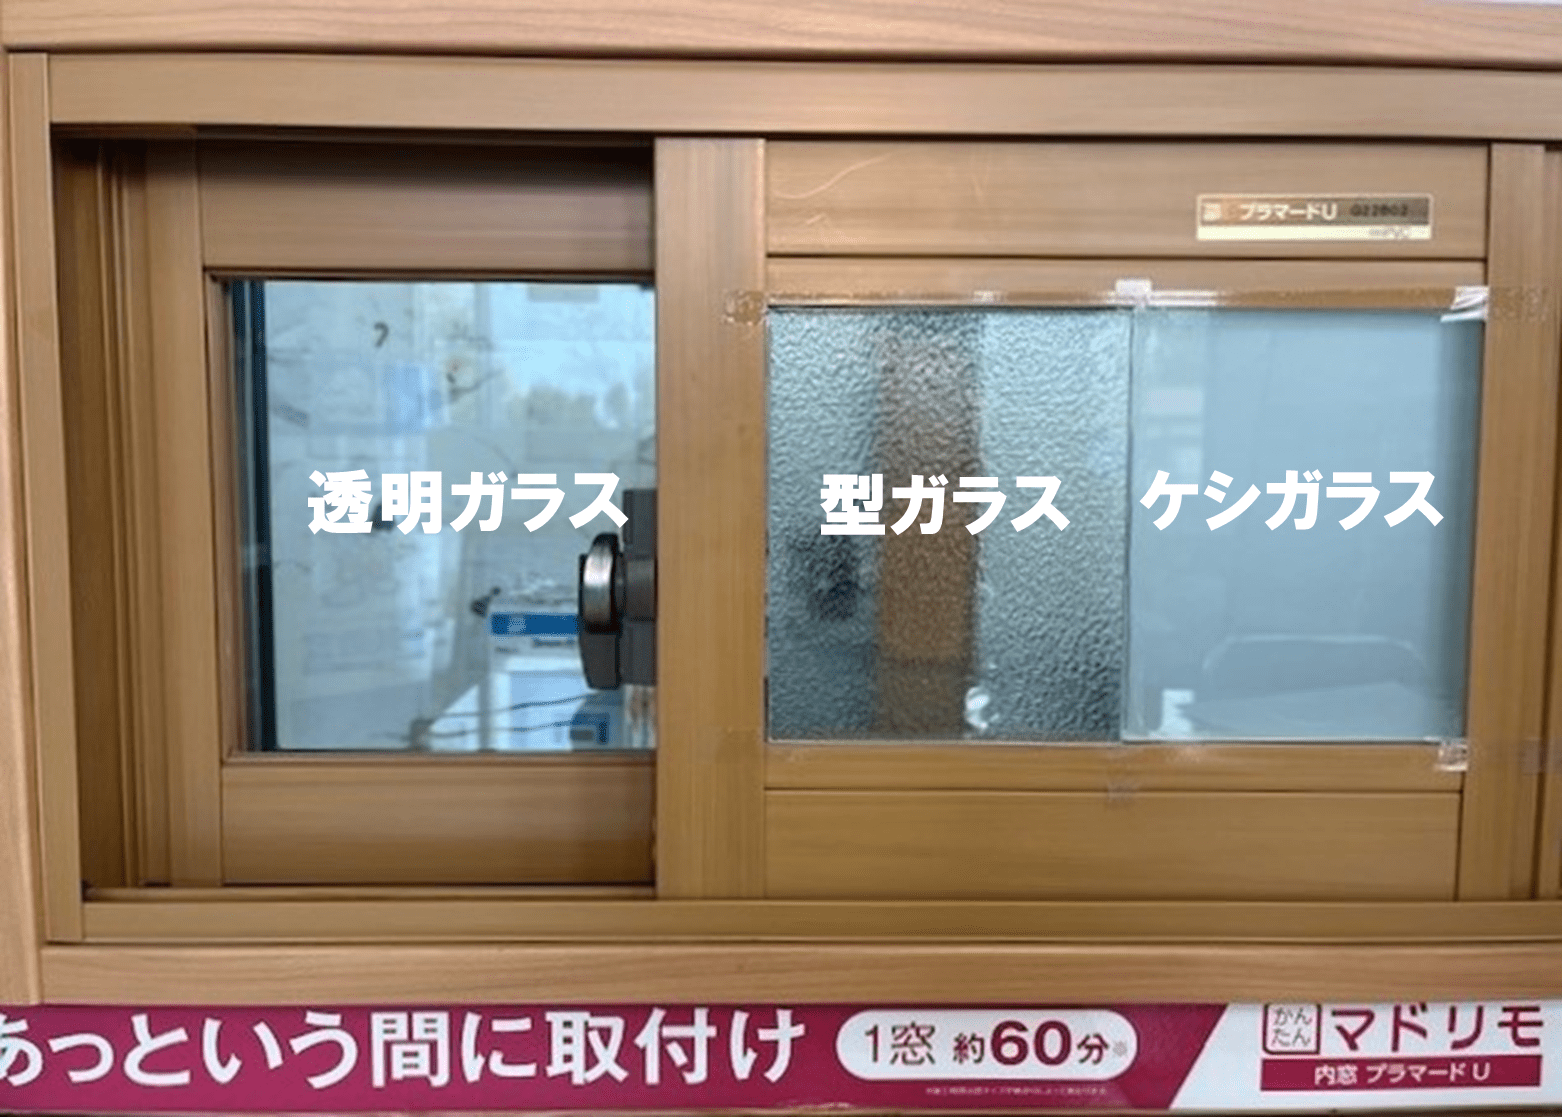 鳩山町で皆さま、断熱リフォームはお済でしょうか?